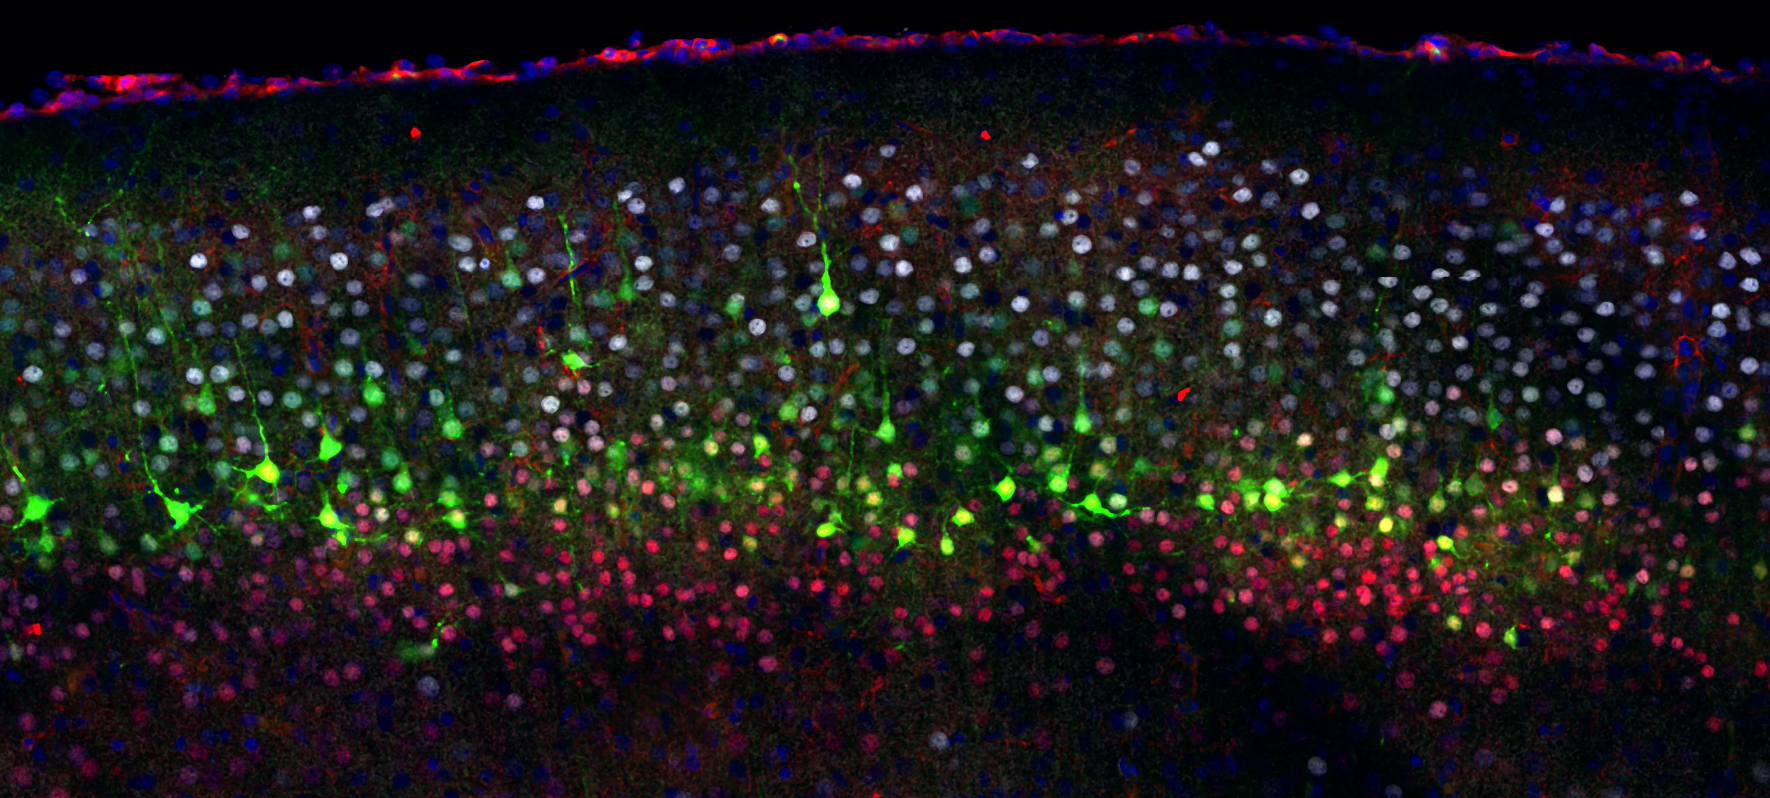 La diversidad de neuronas corticales puede visualizarse a través de diferentes marcadores moleculares, que muestran células con diferente morfología y conectividad.© UNIGE.